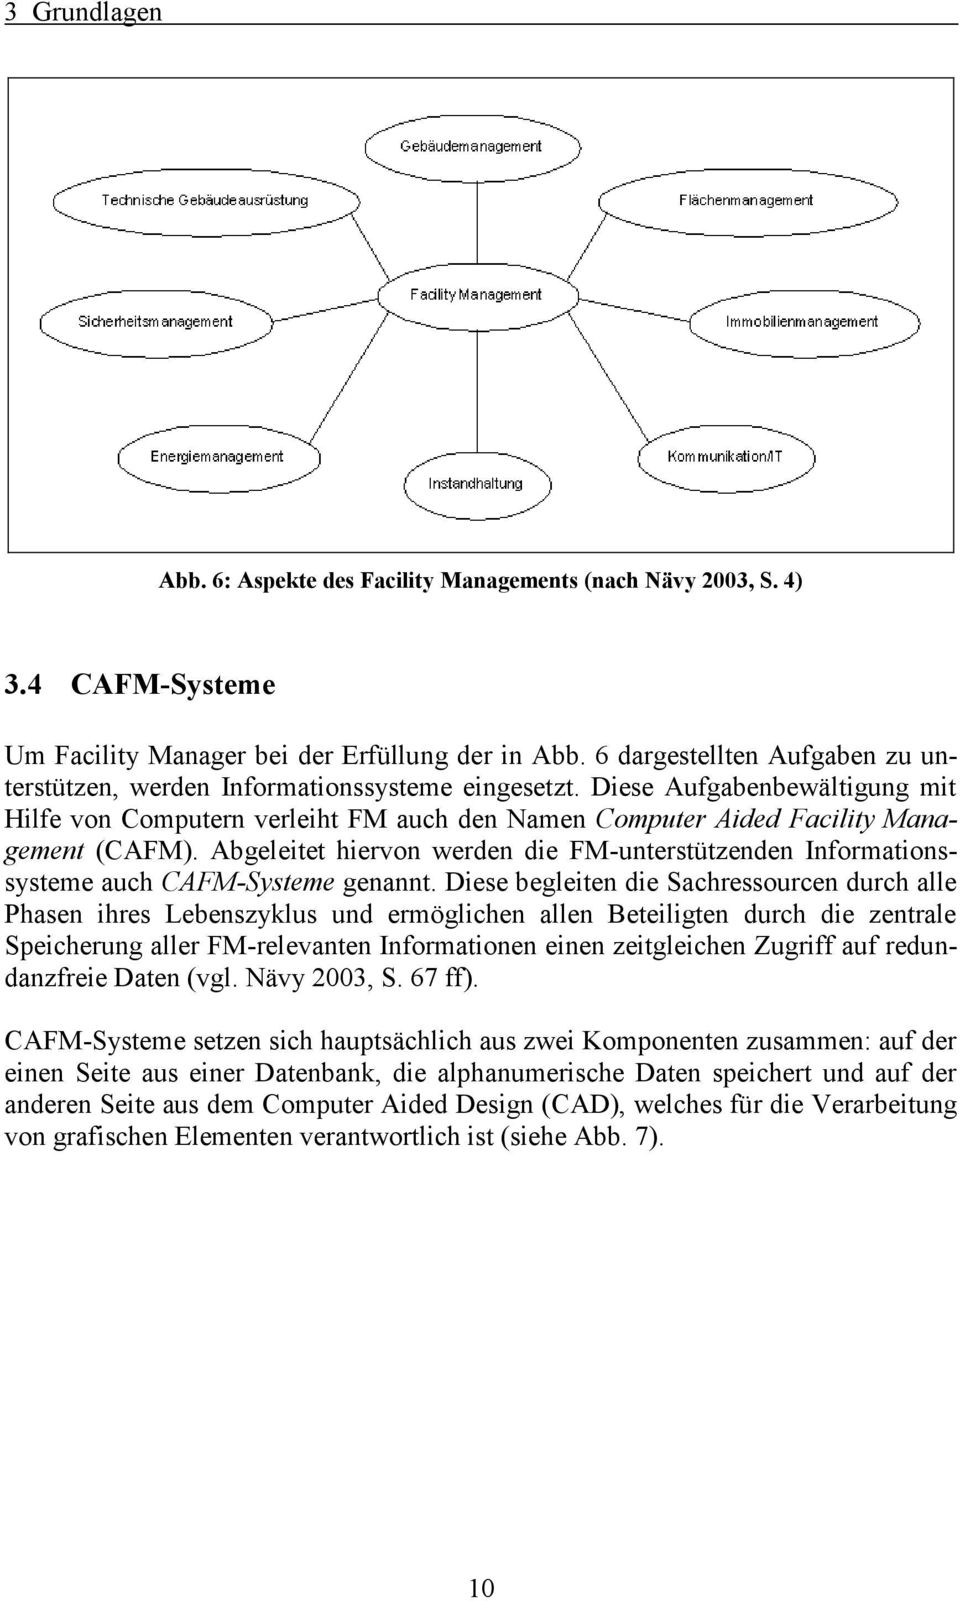 Abgeleitet hiervn werden die FM-unterstützenden Infrmatinssysteme auch CAFM-Systeme genannt.